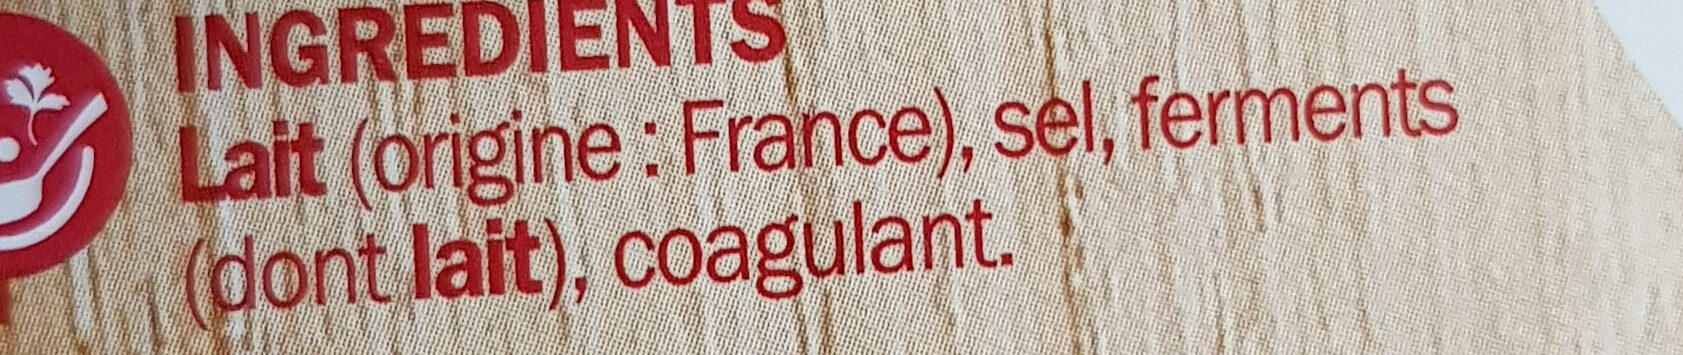 Fromage pour tartiflette - Ingrédients